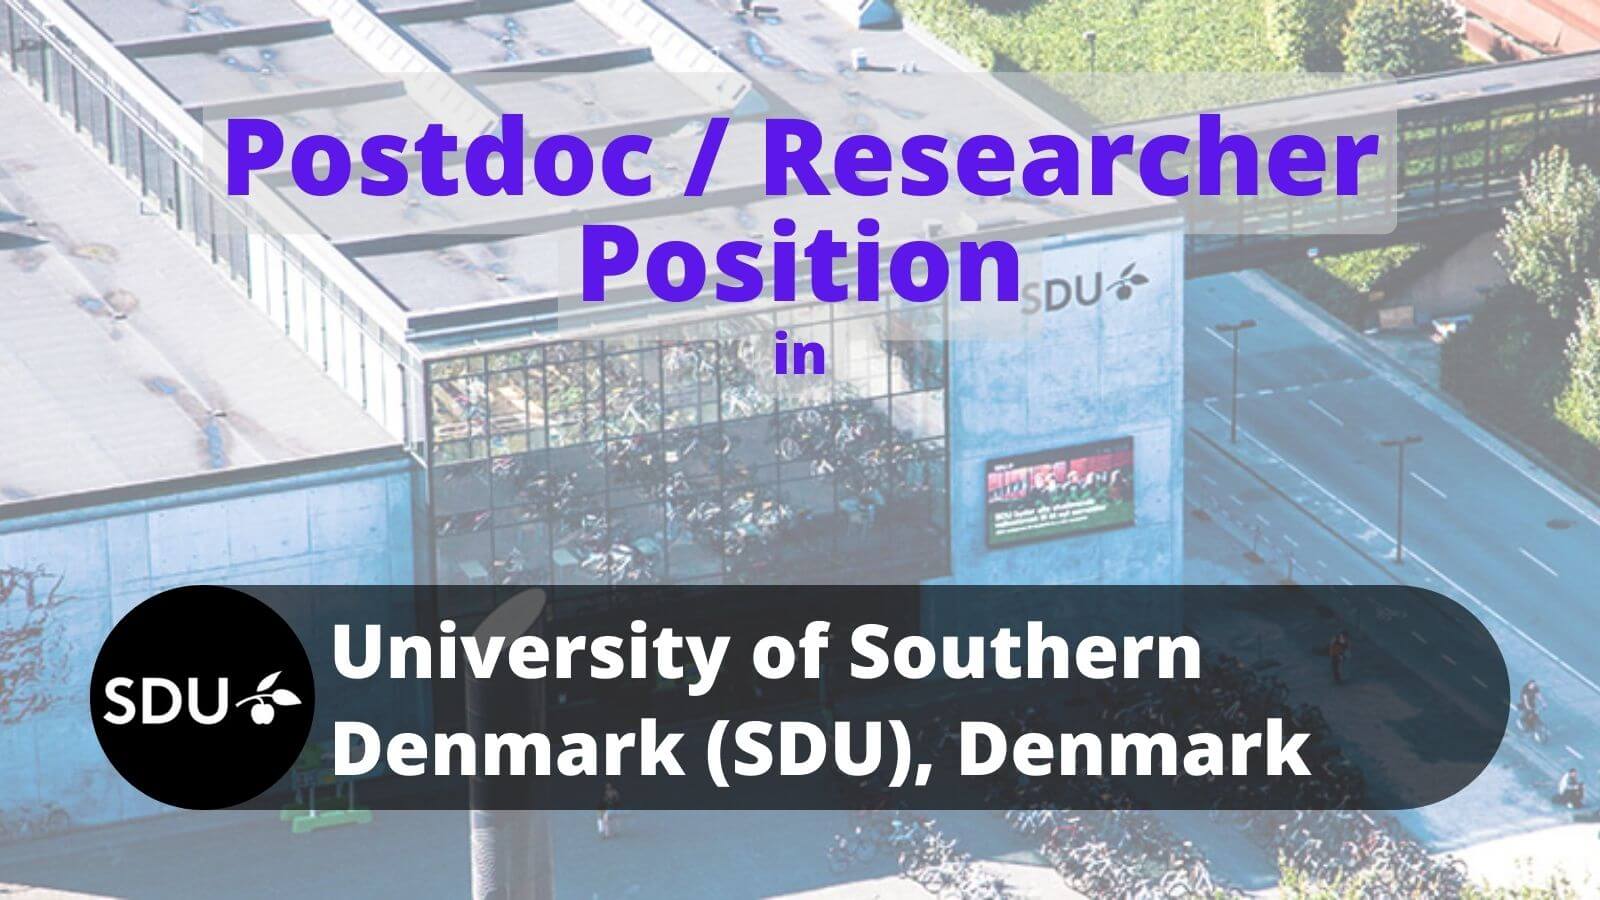 Postdoc Researcher Position SDU University of Southern Denmark